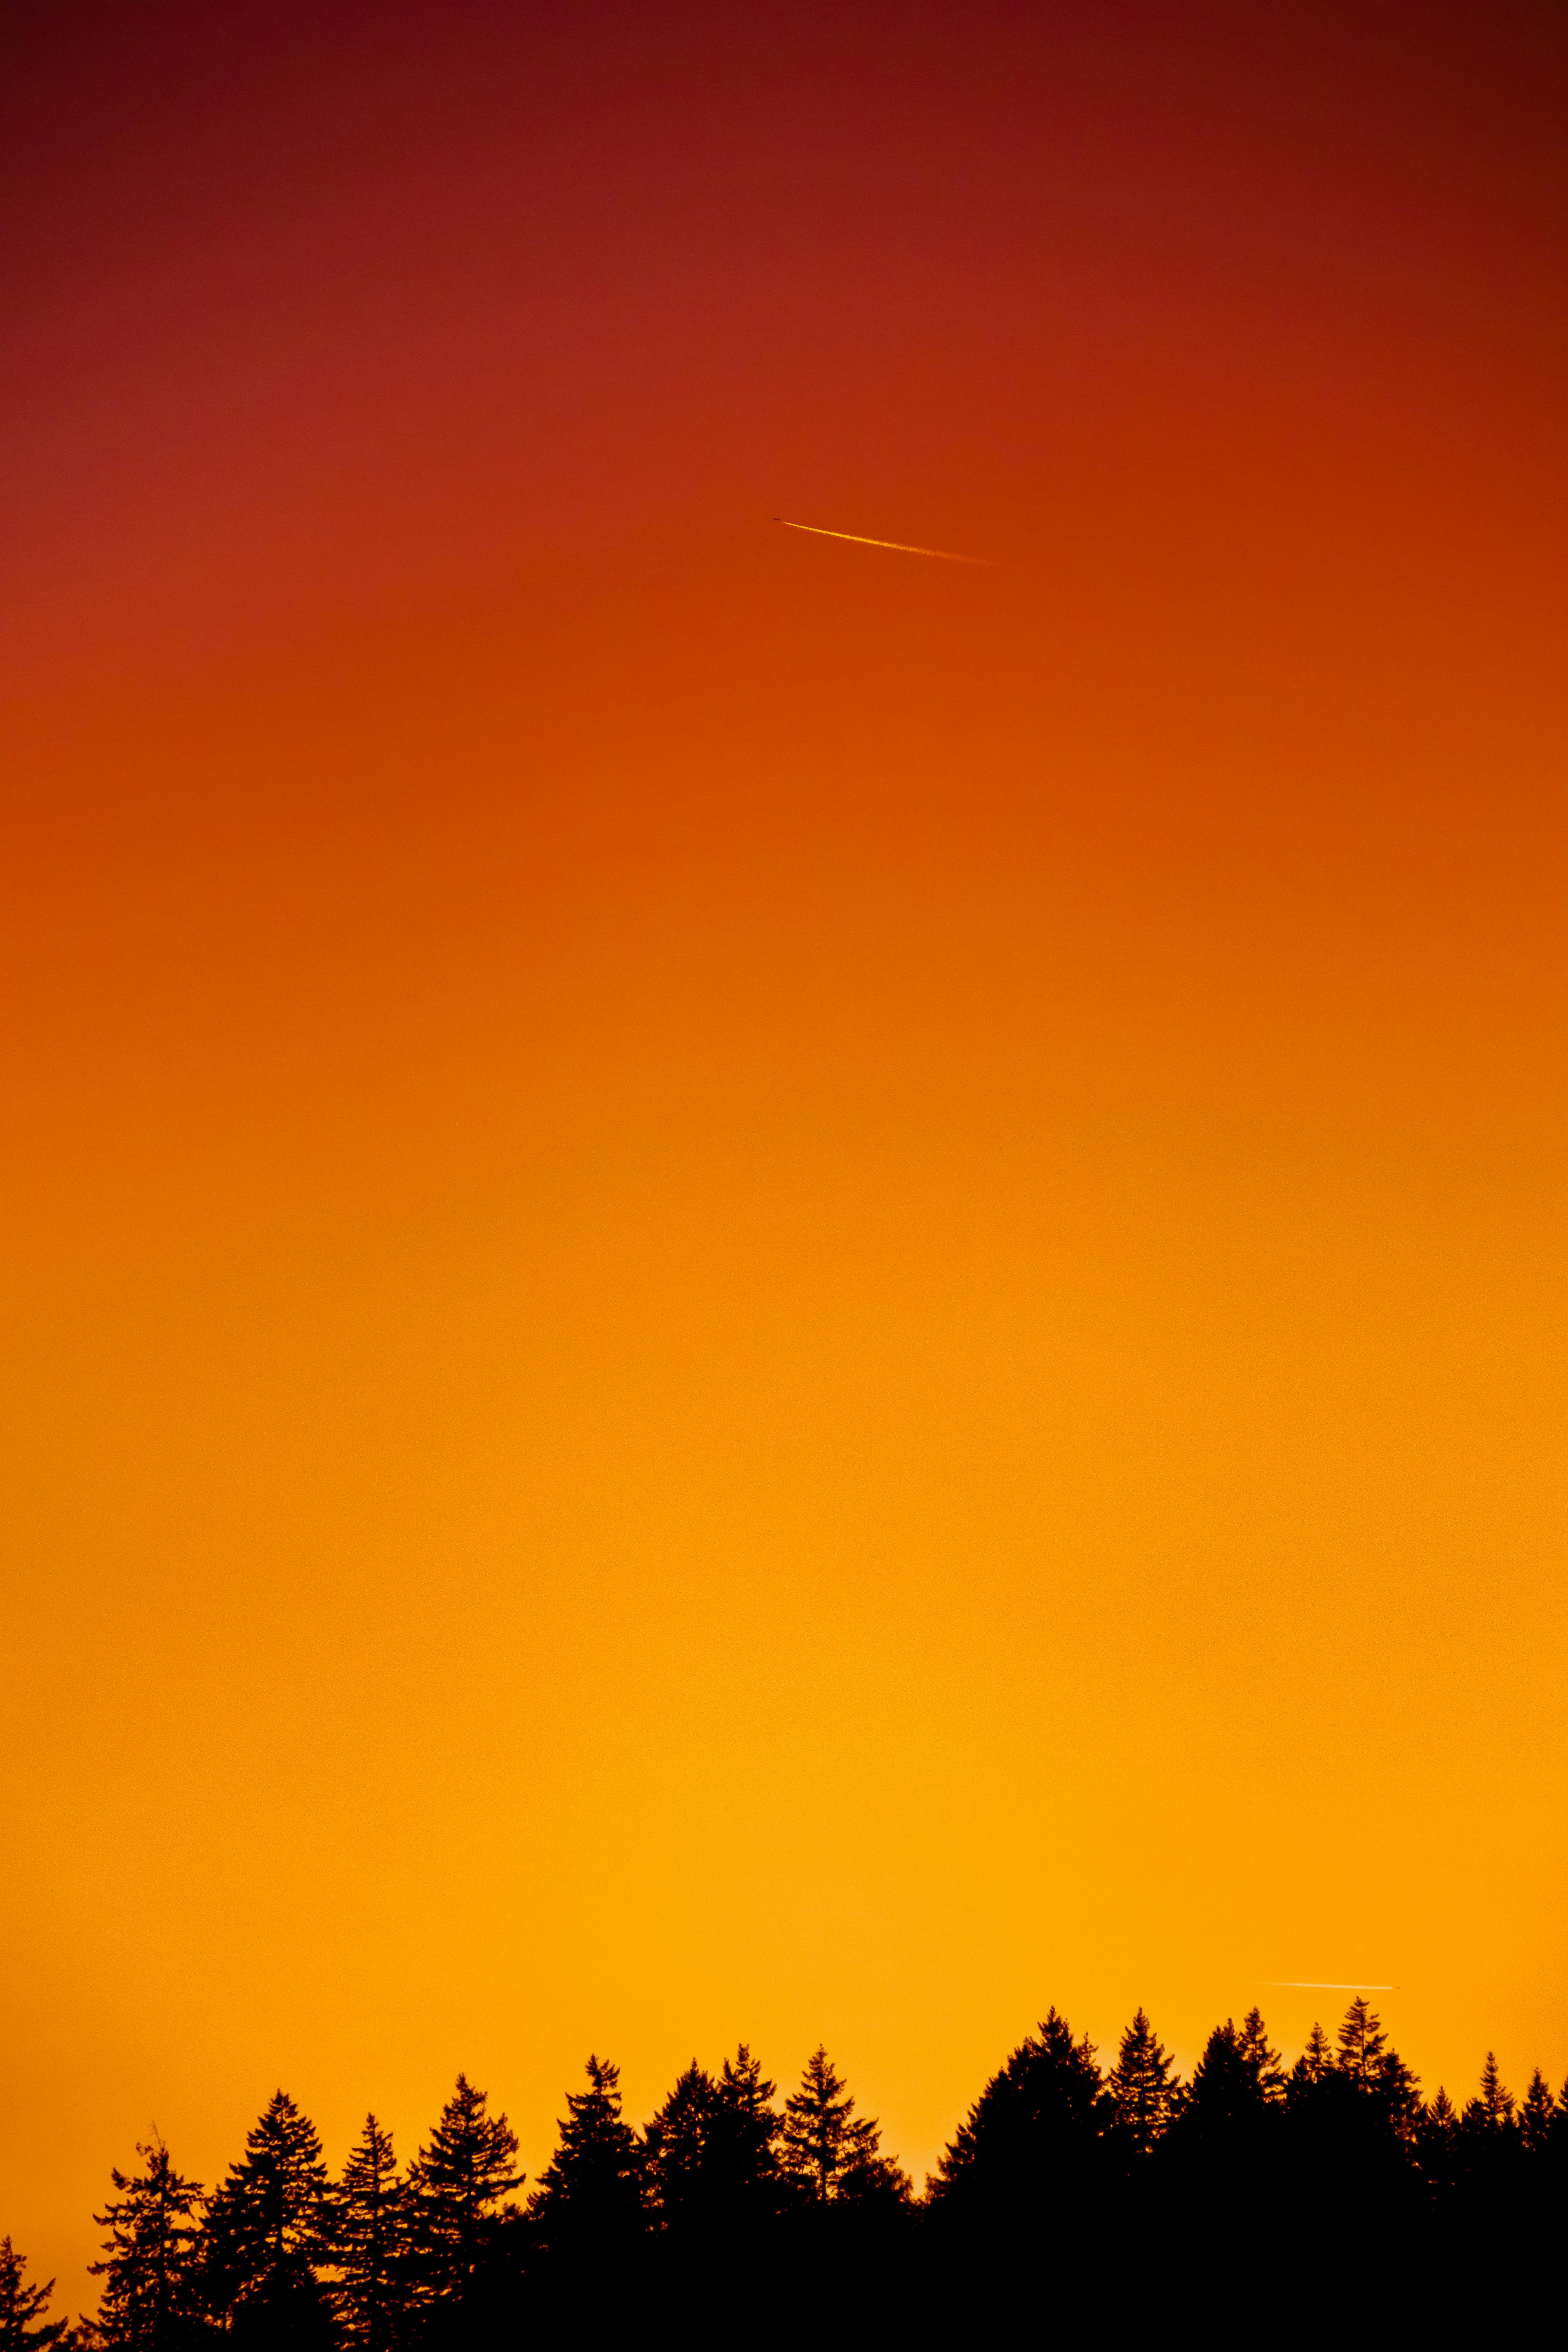 Details 100 orange sky background